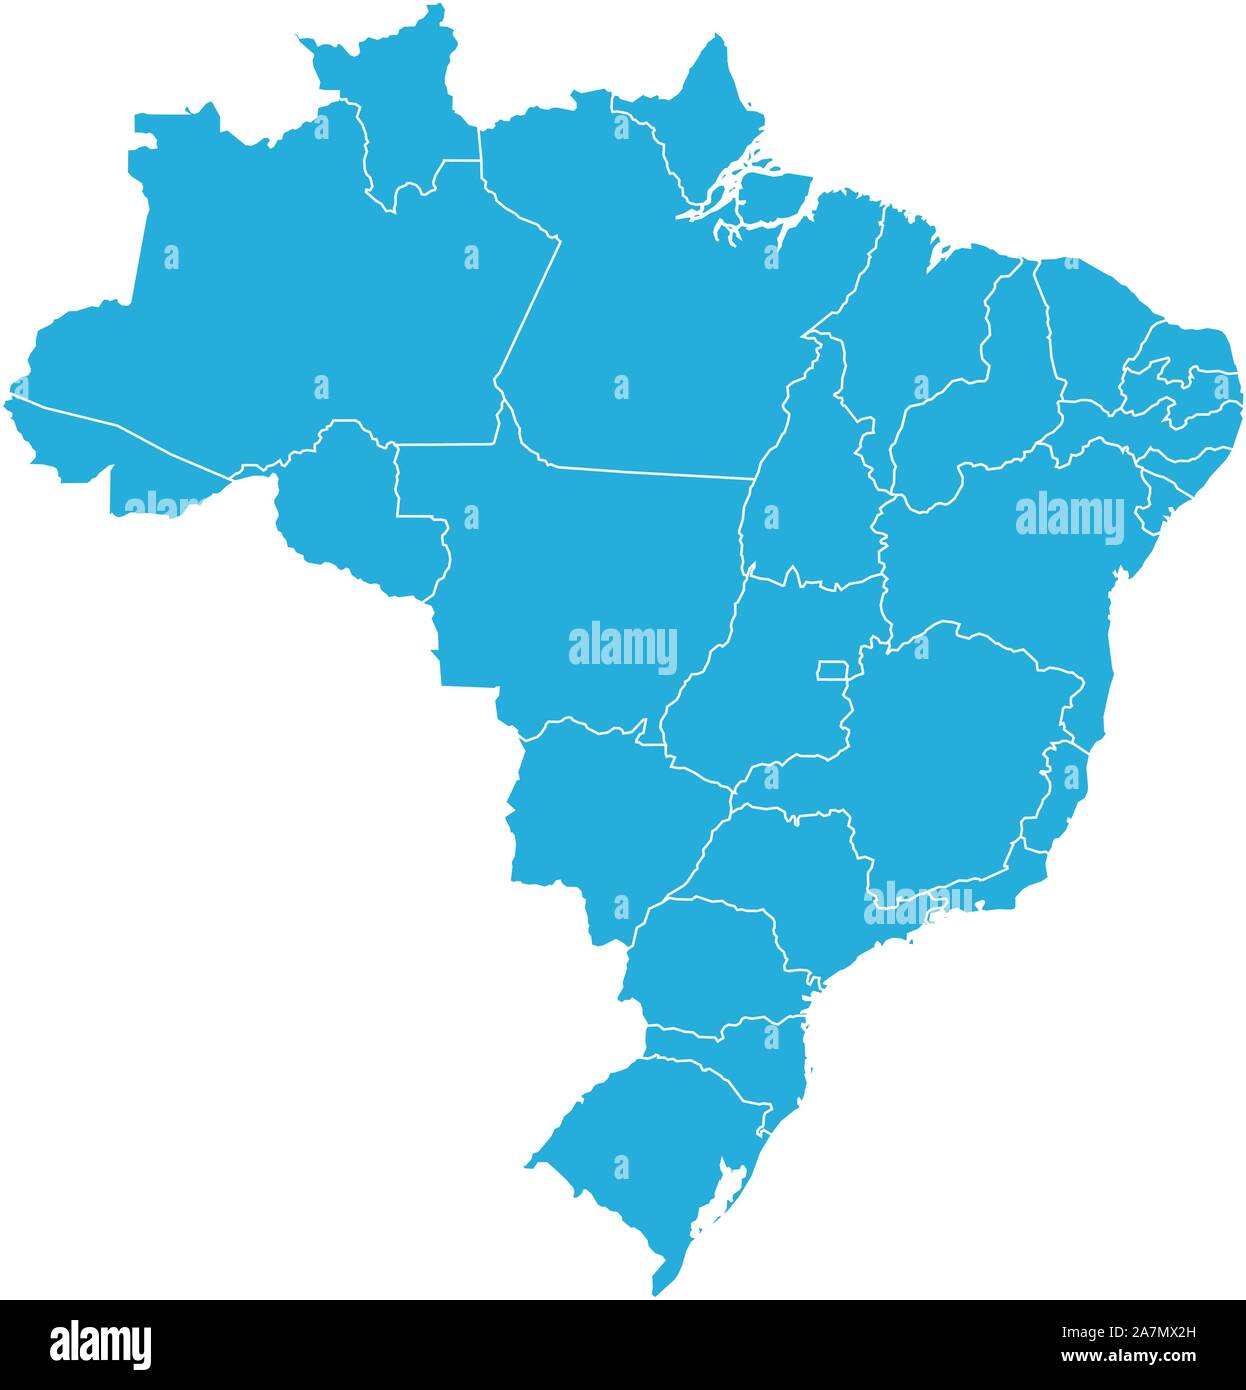 Le Brésil moderne carte pays avec contours vector illustration. La couleur bleue. Illustration de Vecteur